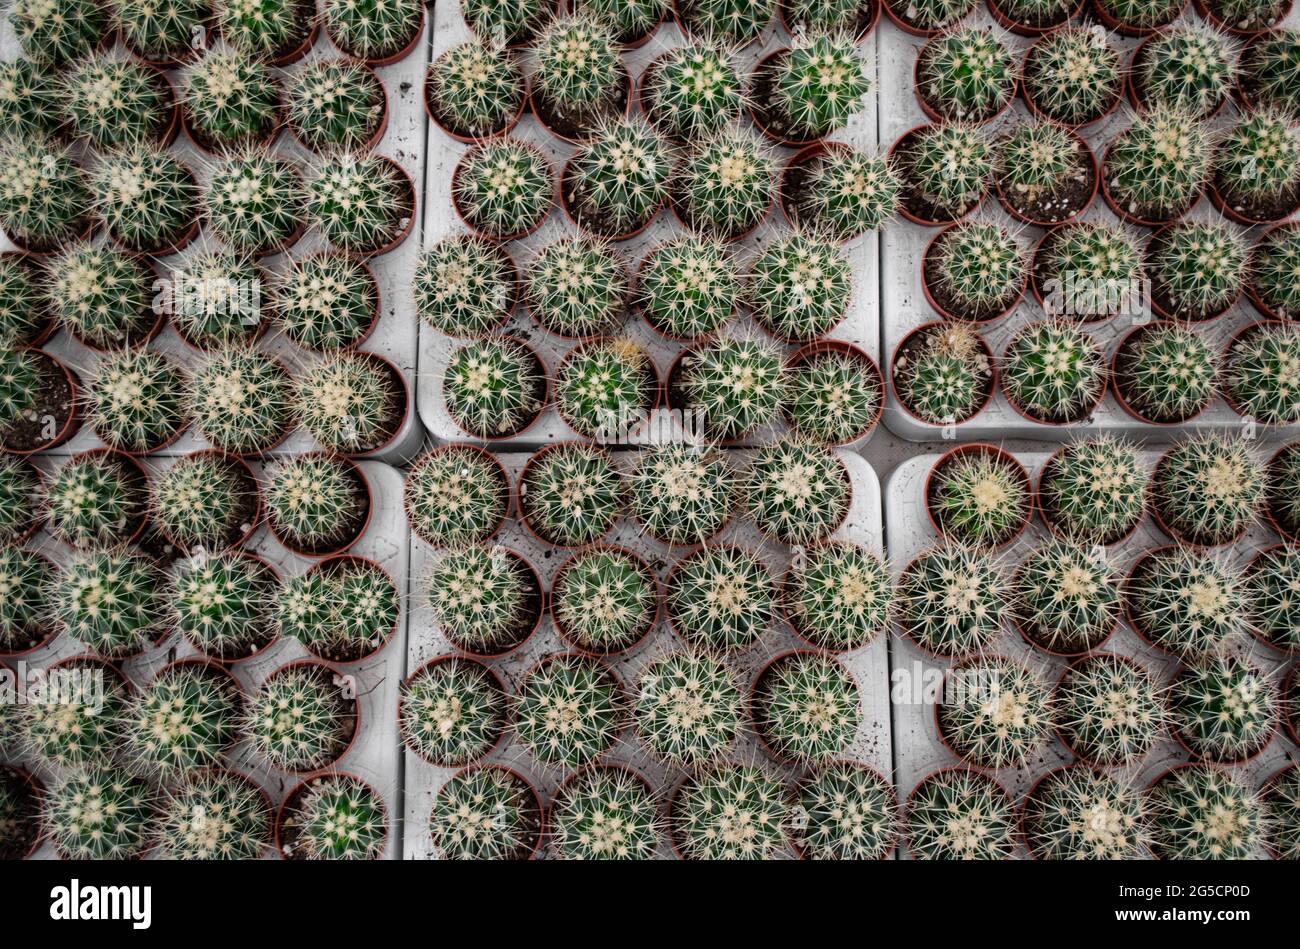 Un sacco di piccoli cactus rotondi con aghi gialli affilati in vasi di fiori. Vendita fioraio. Foto Stock